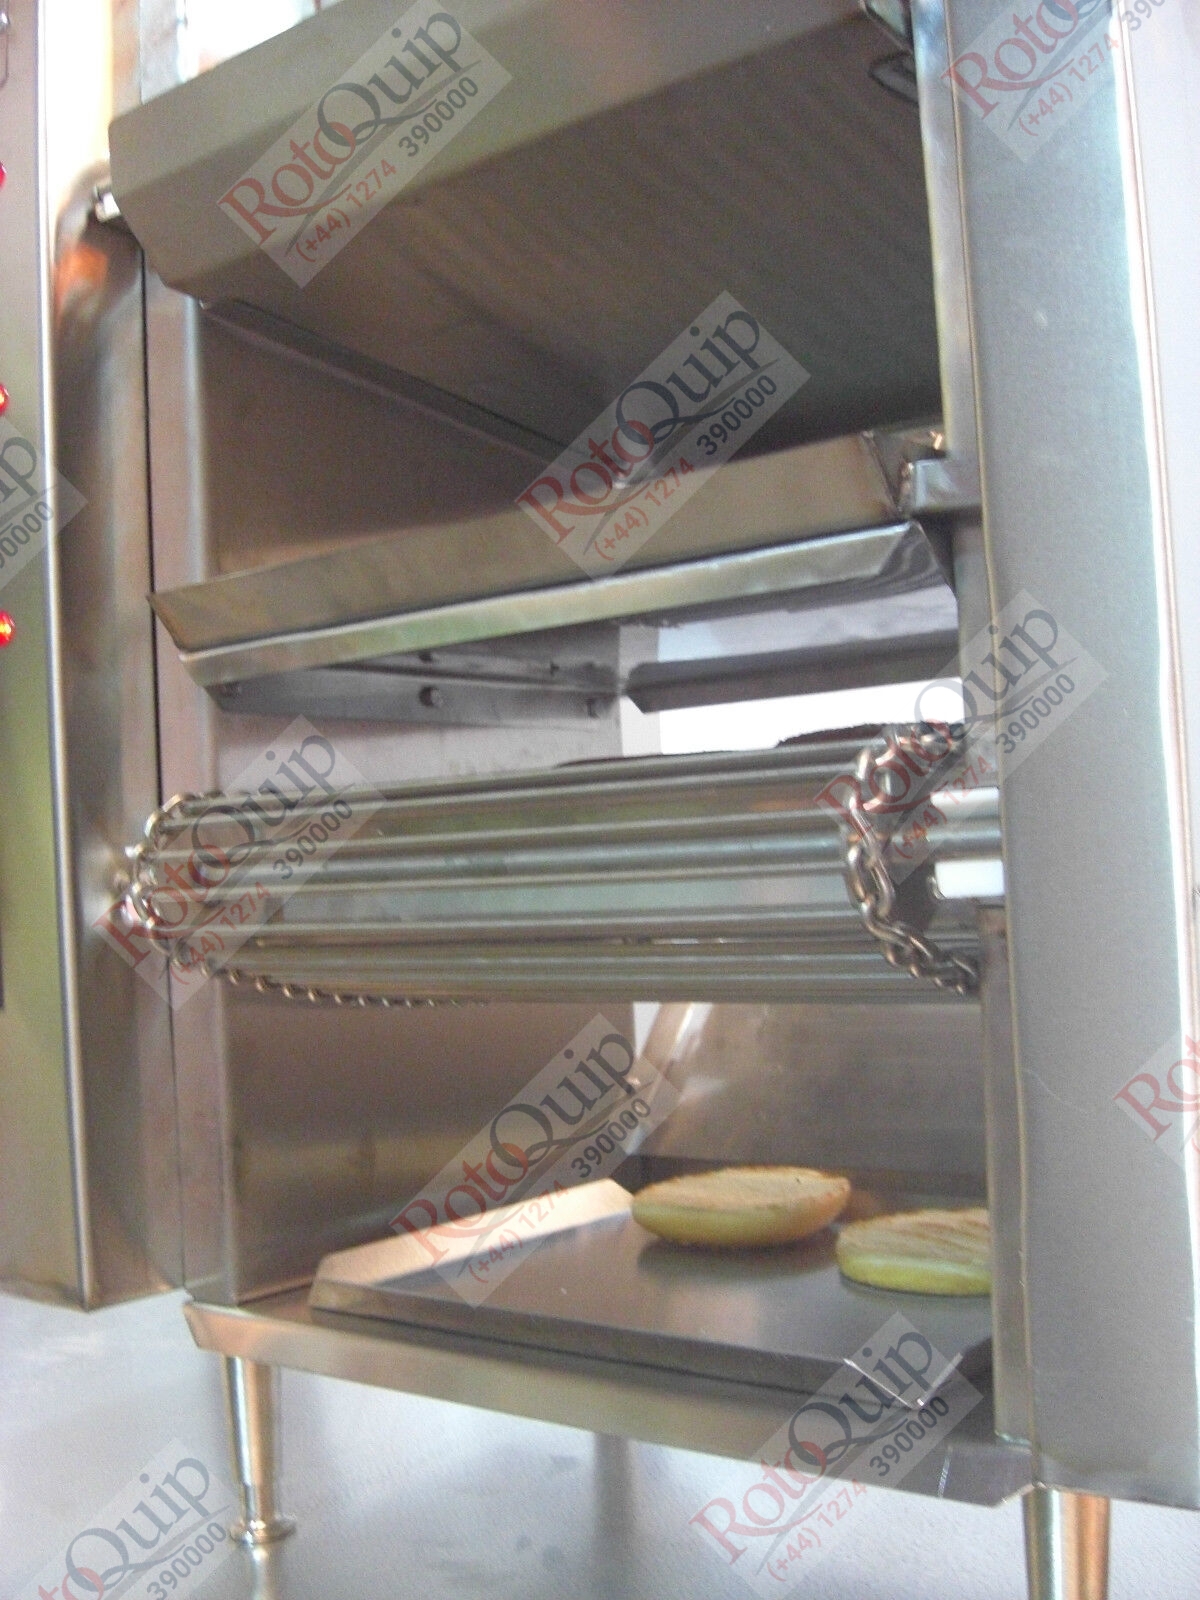 RBB-236 – Electric Conveyor Burger Broiler + Bun Toaster